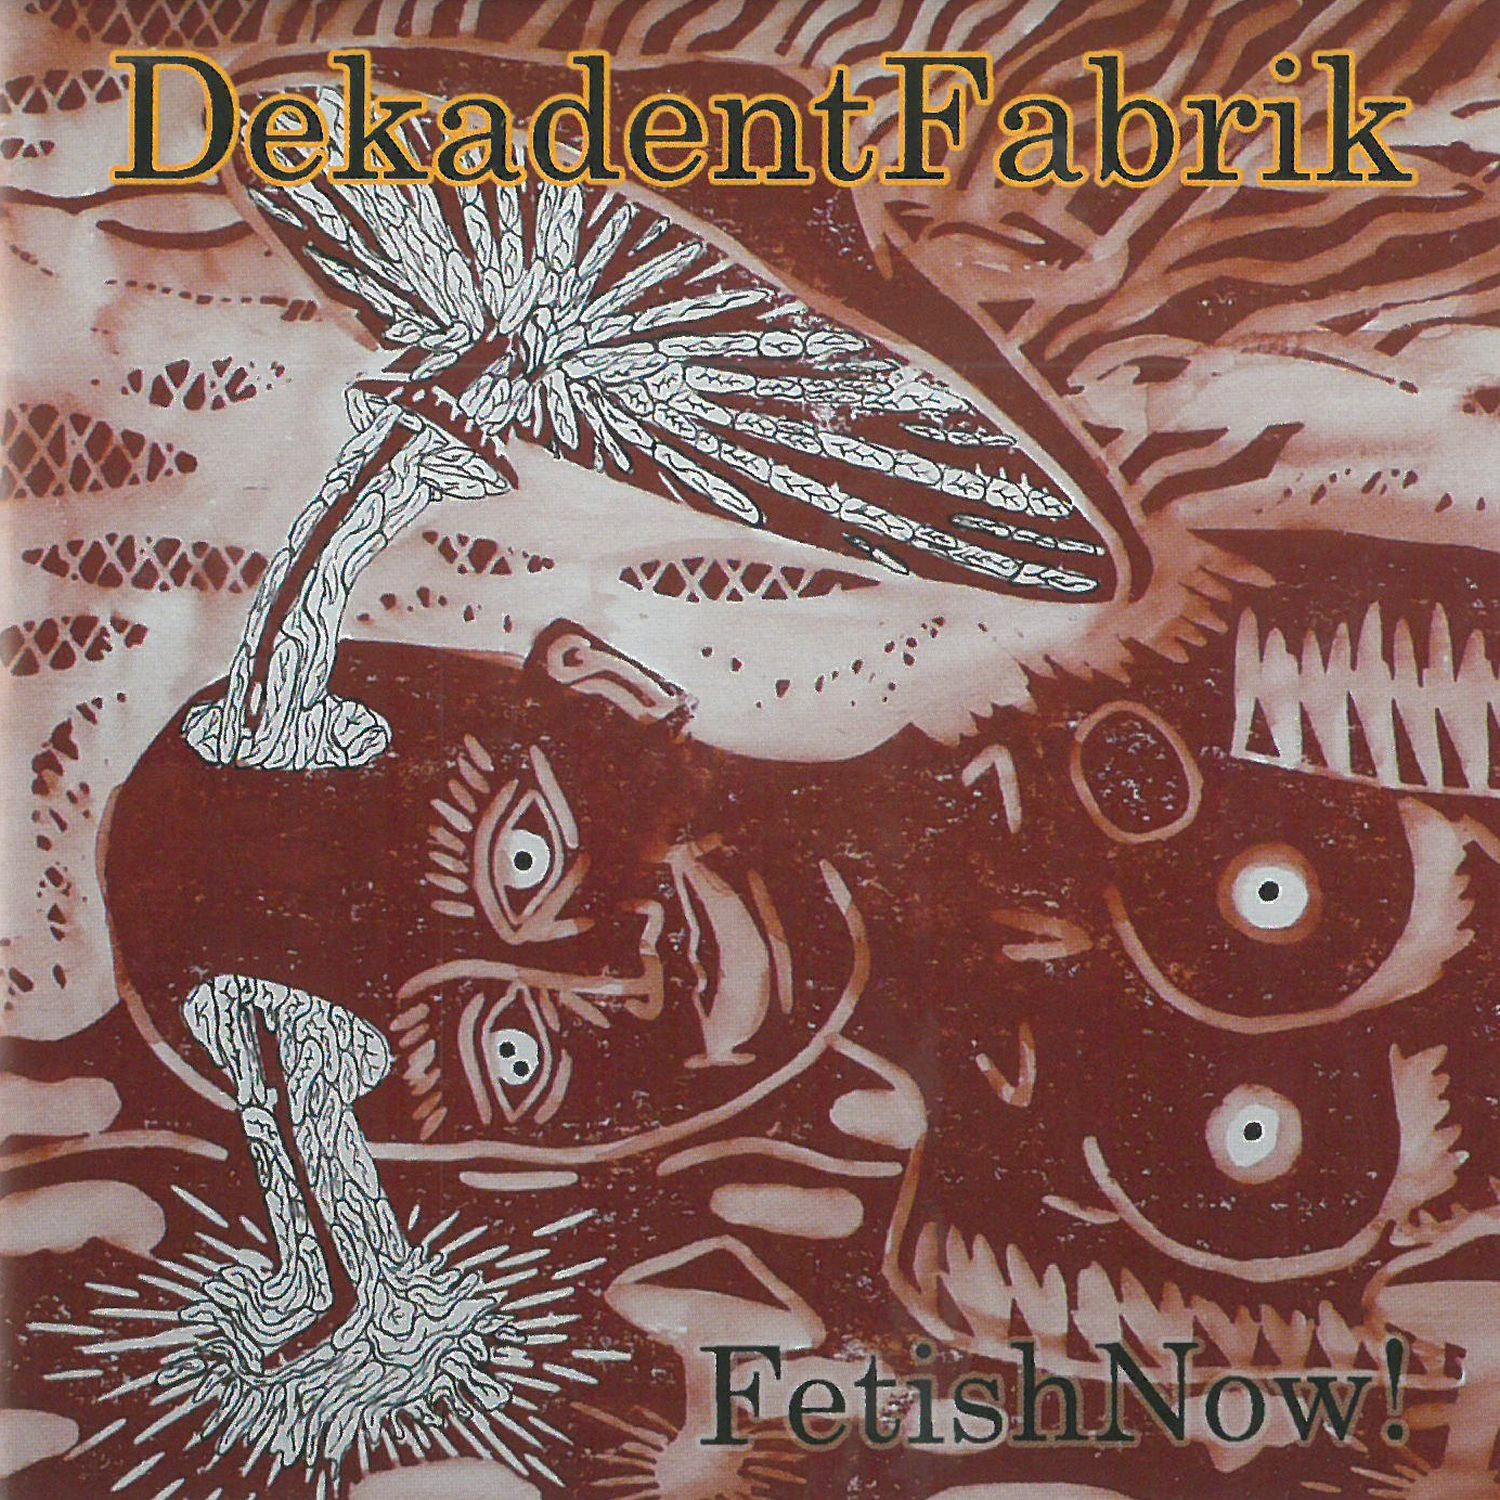 CD Shop - DEKADENT FABRIK FETISH NOW!